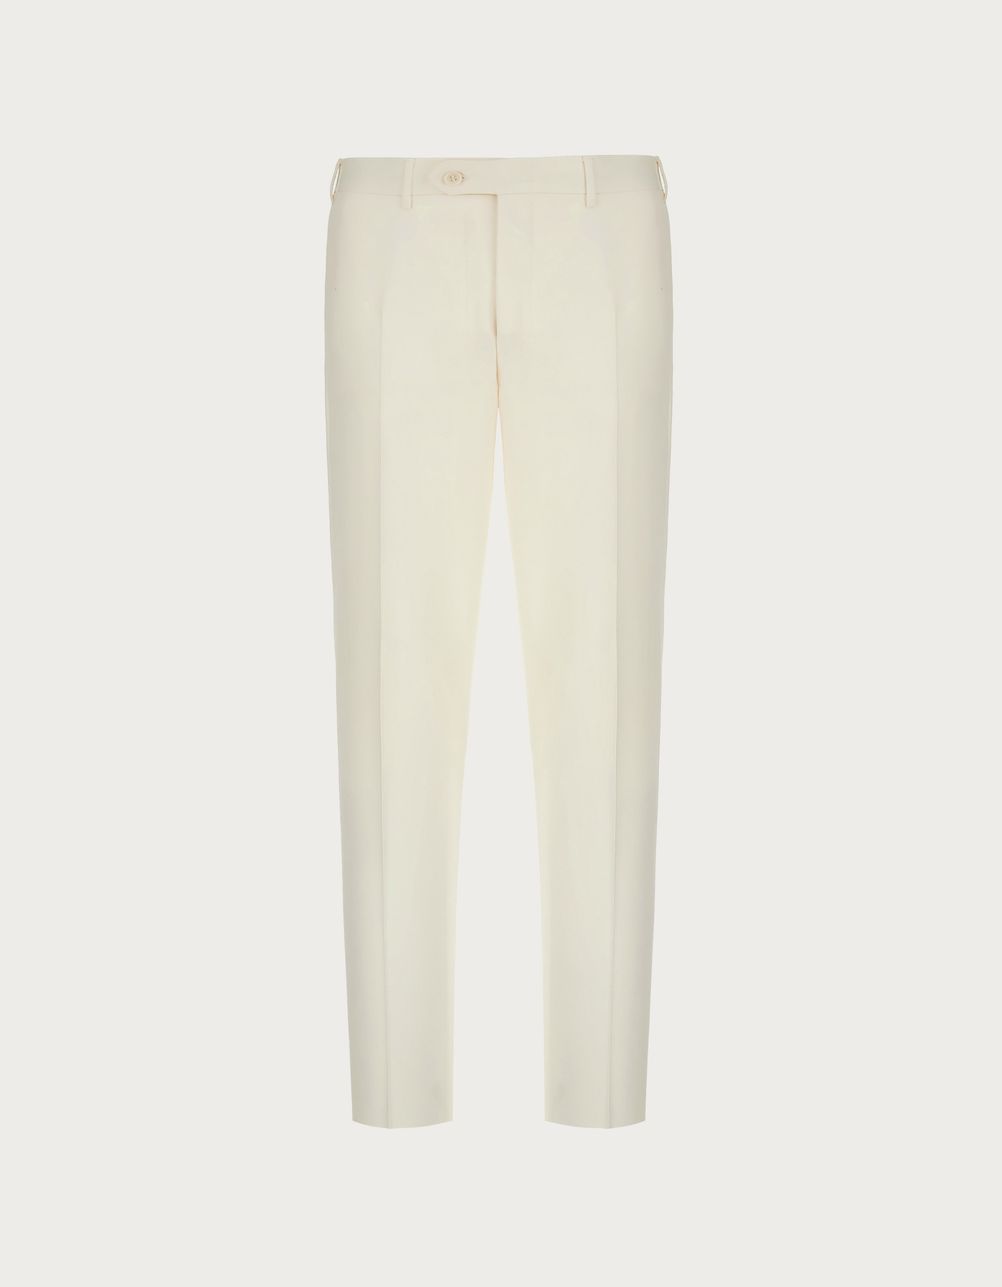 White pants in linen